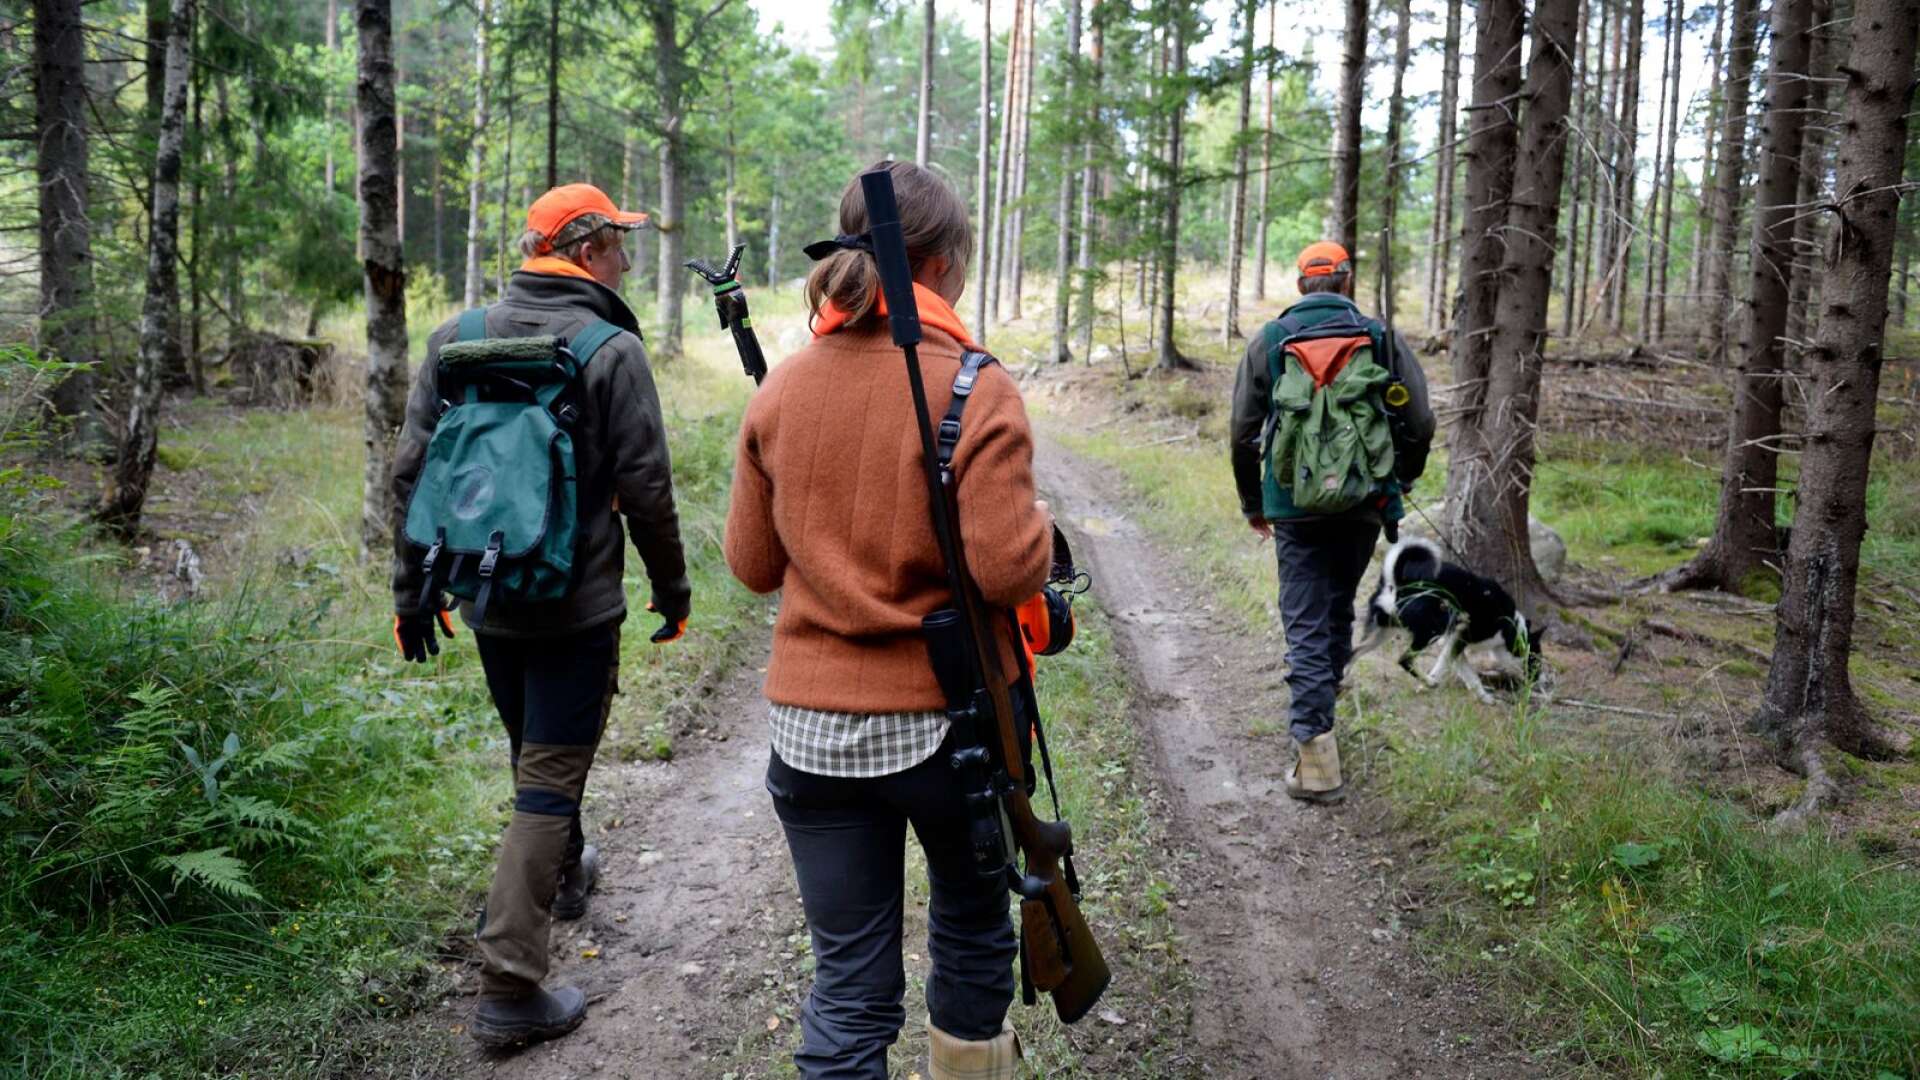 Att jaga är inte en hobby för de flesta utan det är en livsstil och en del av deras identitet. Ett sådant uttalande ses därför som en skuldbeläggning av alla jägare, skriver Marléne Lund Kopparklint och Patrick Benabou.